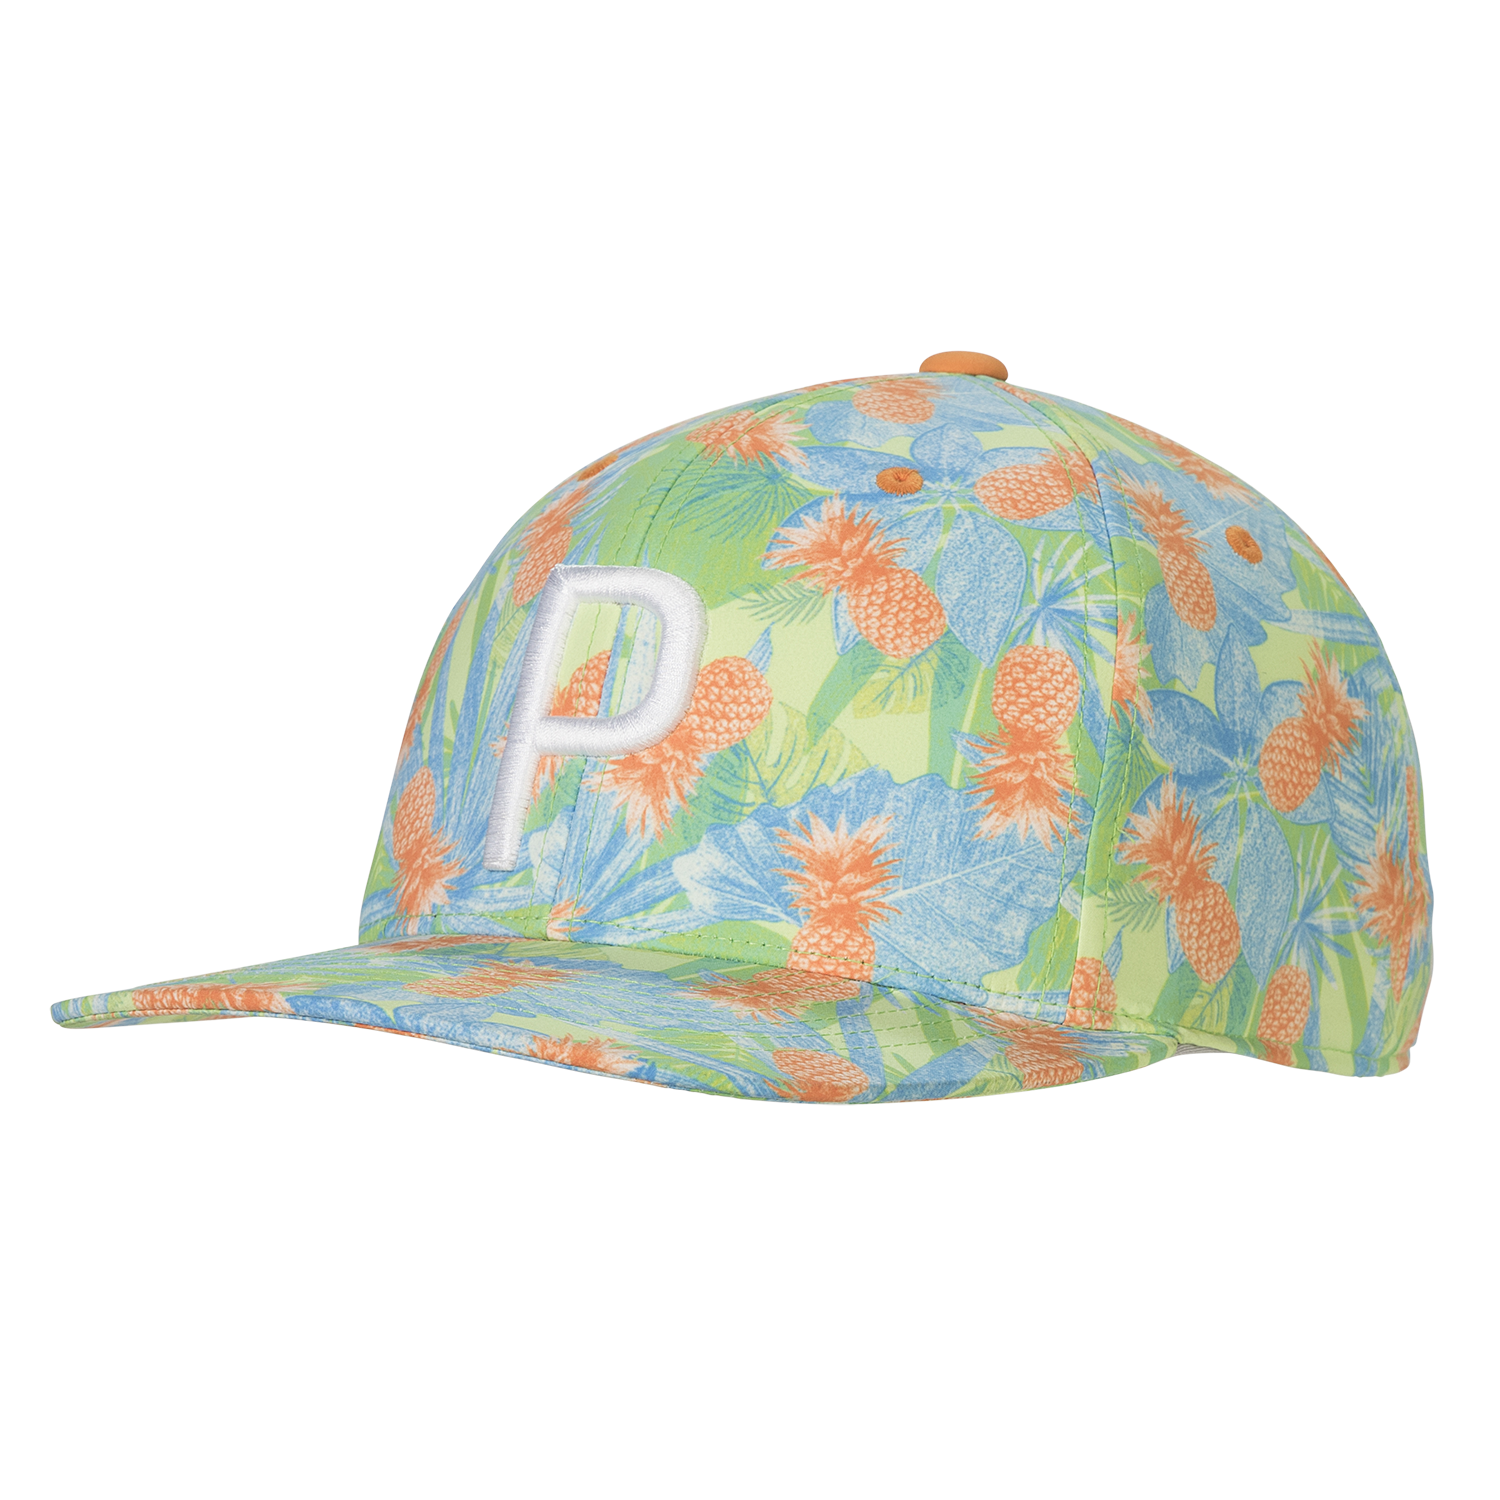 Puma P Pineapple Snapback Hat | PGA 